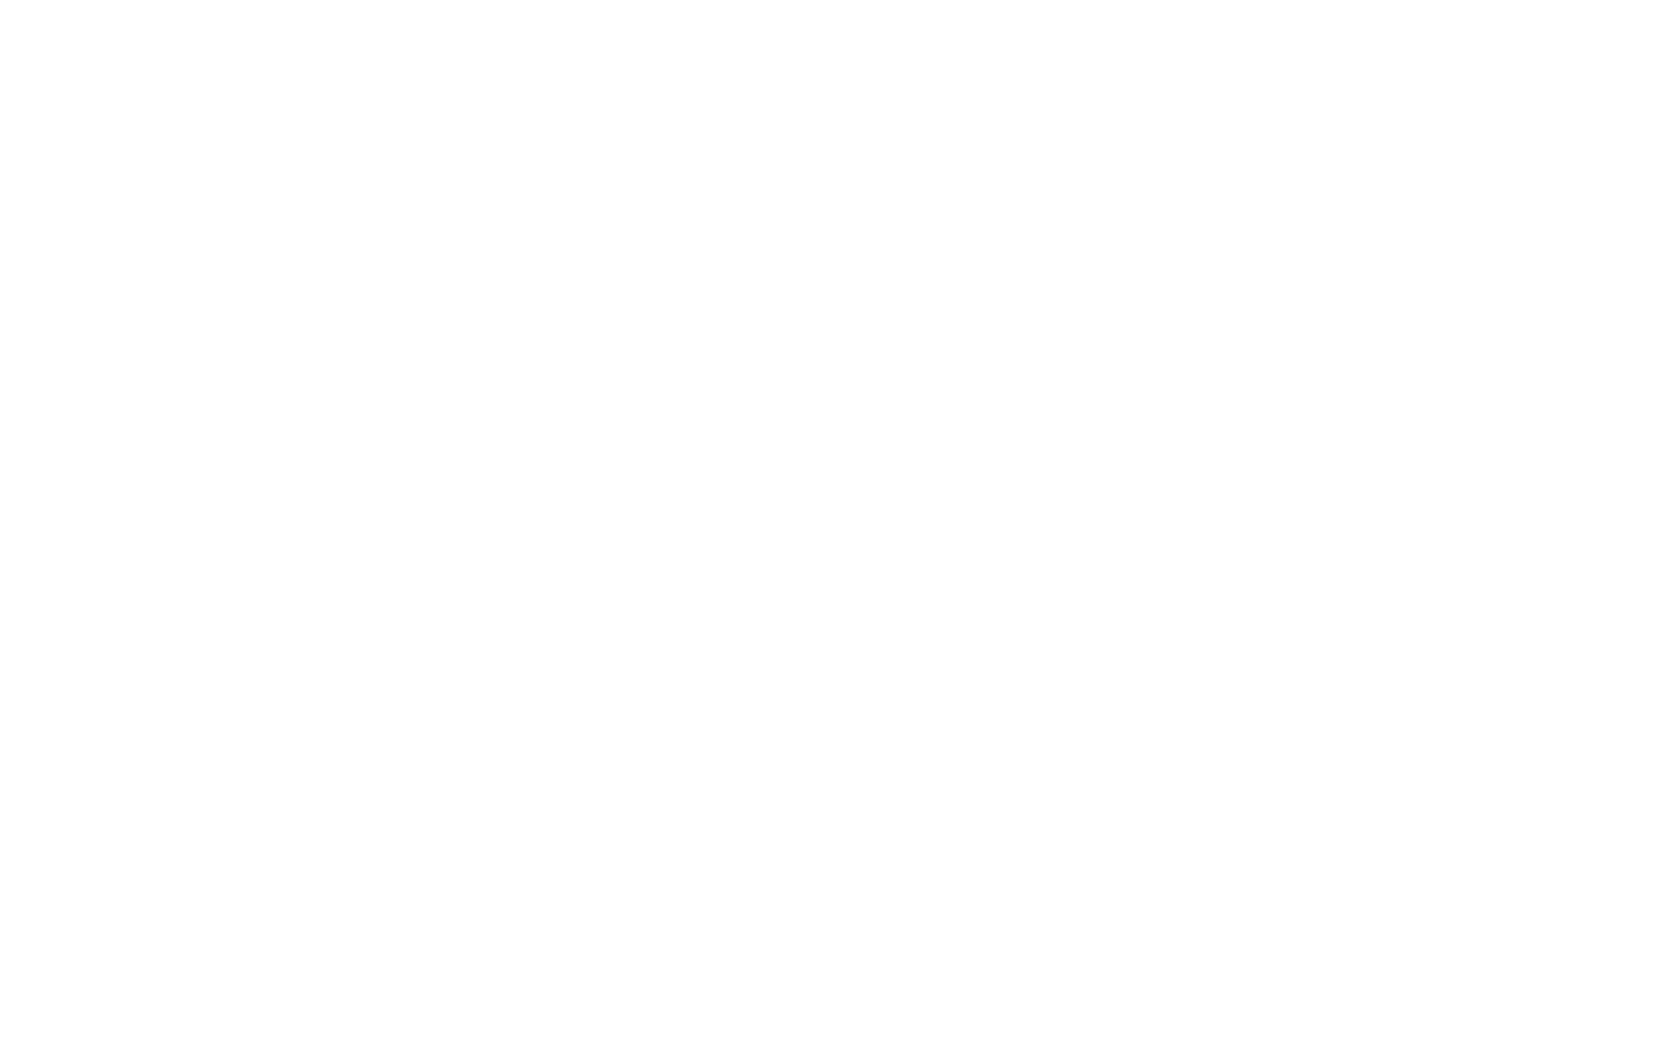 Торцевая заглушка Flexy TOREC LINE 15 для профилей Flexy: размер, вид, применение, способ монтажа в Москве, СПБ и России